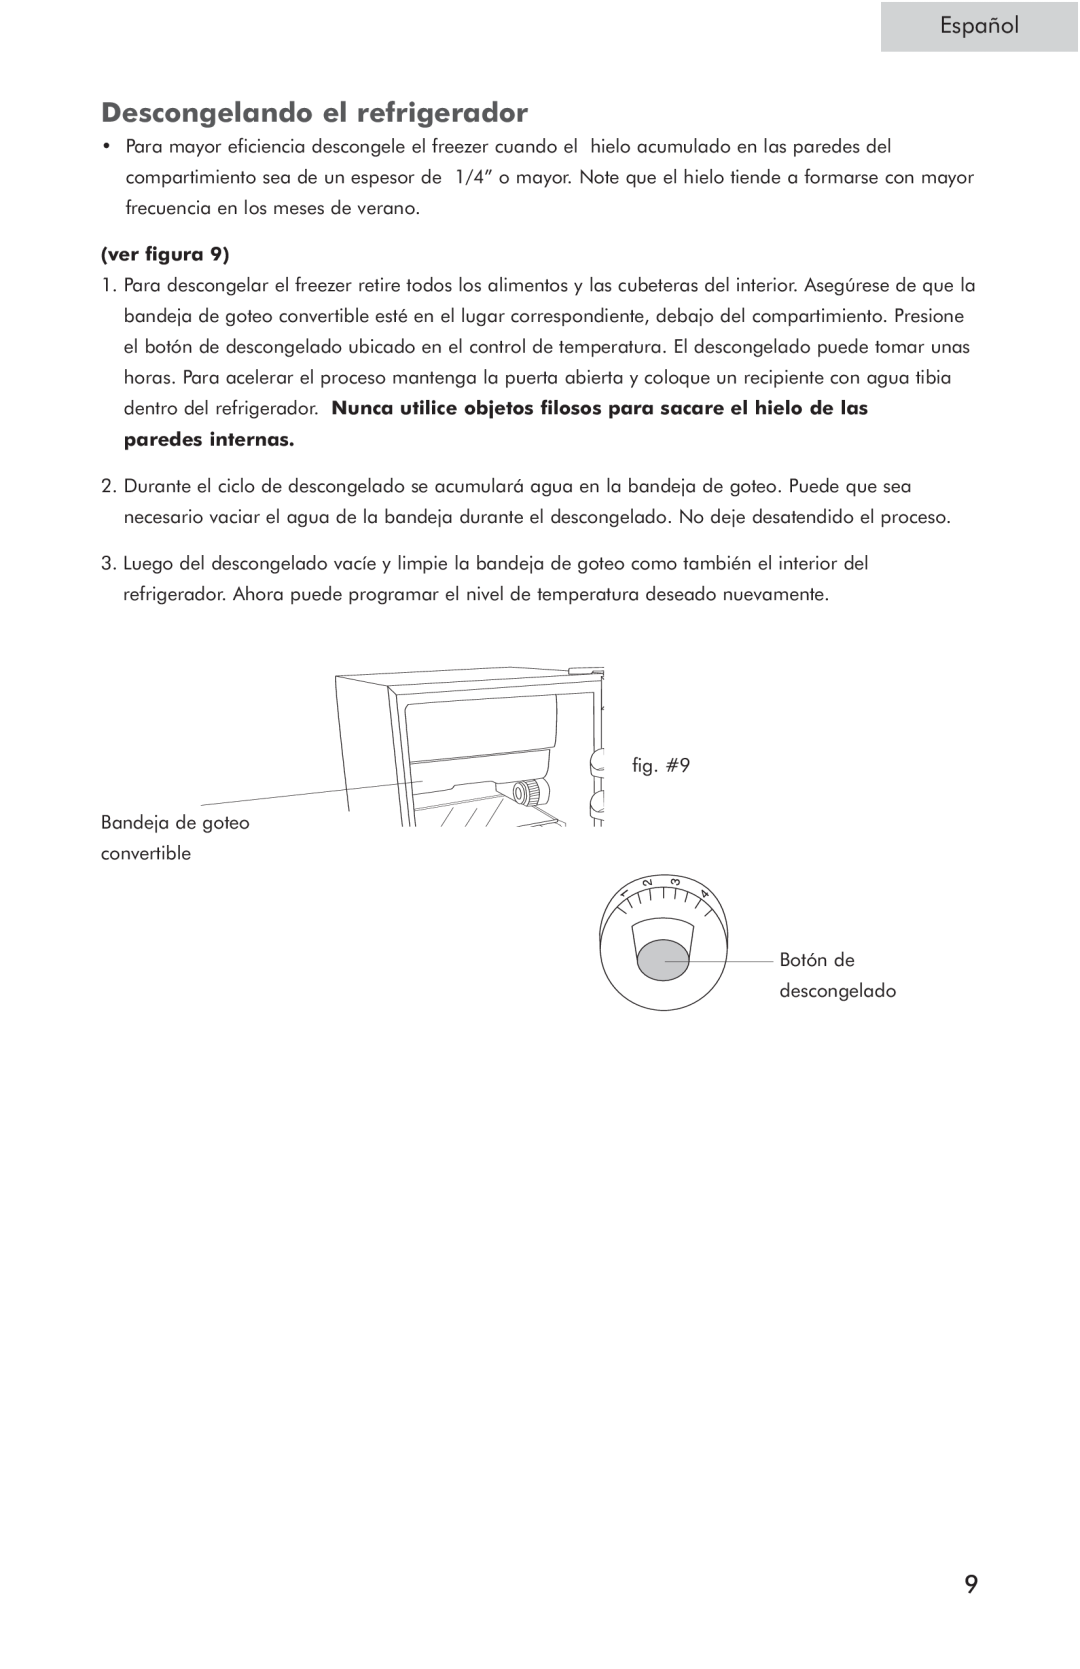 Haier HSP05WNC user manual Descongelando el refrigerador, Español, ver figura 